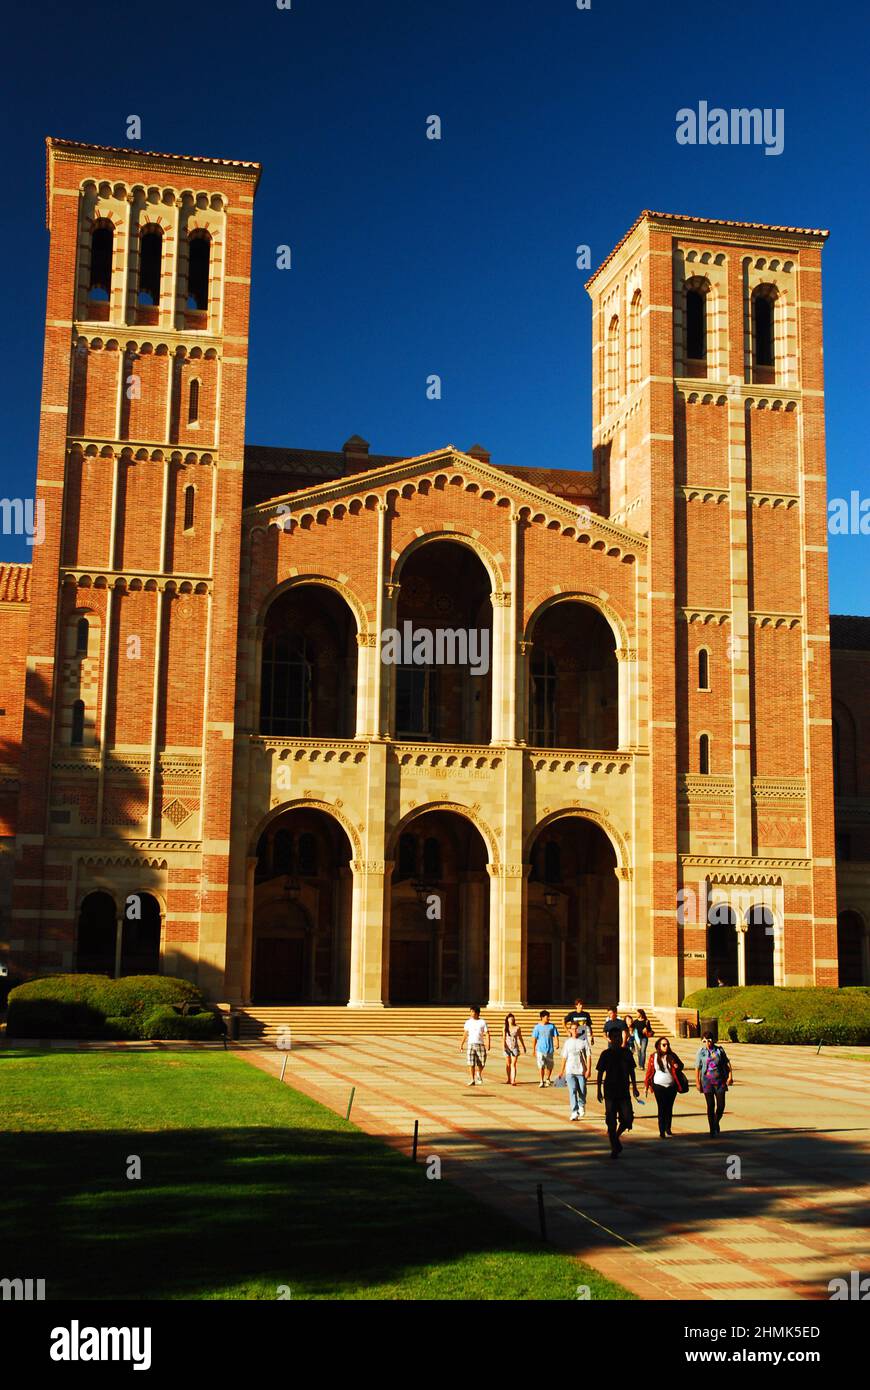 Les étudiants marchent sur le principal quad du campus de l'UCLA, en direction de l'historique Royce Hall, le théâtre principal de l'université Banque D'Images